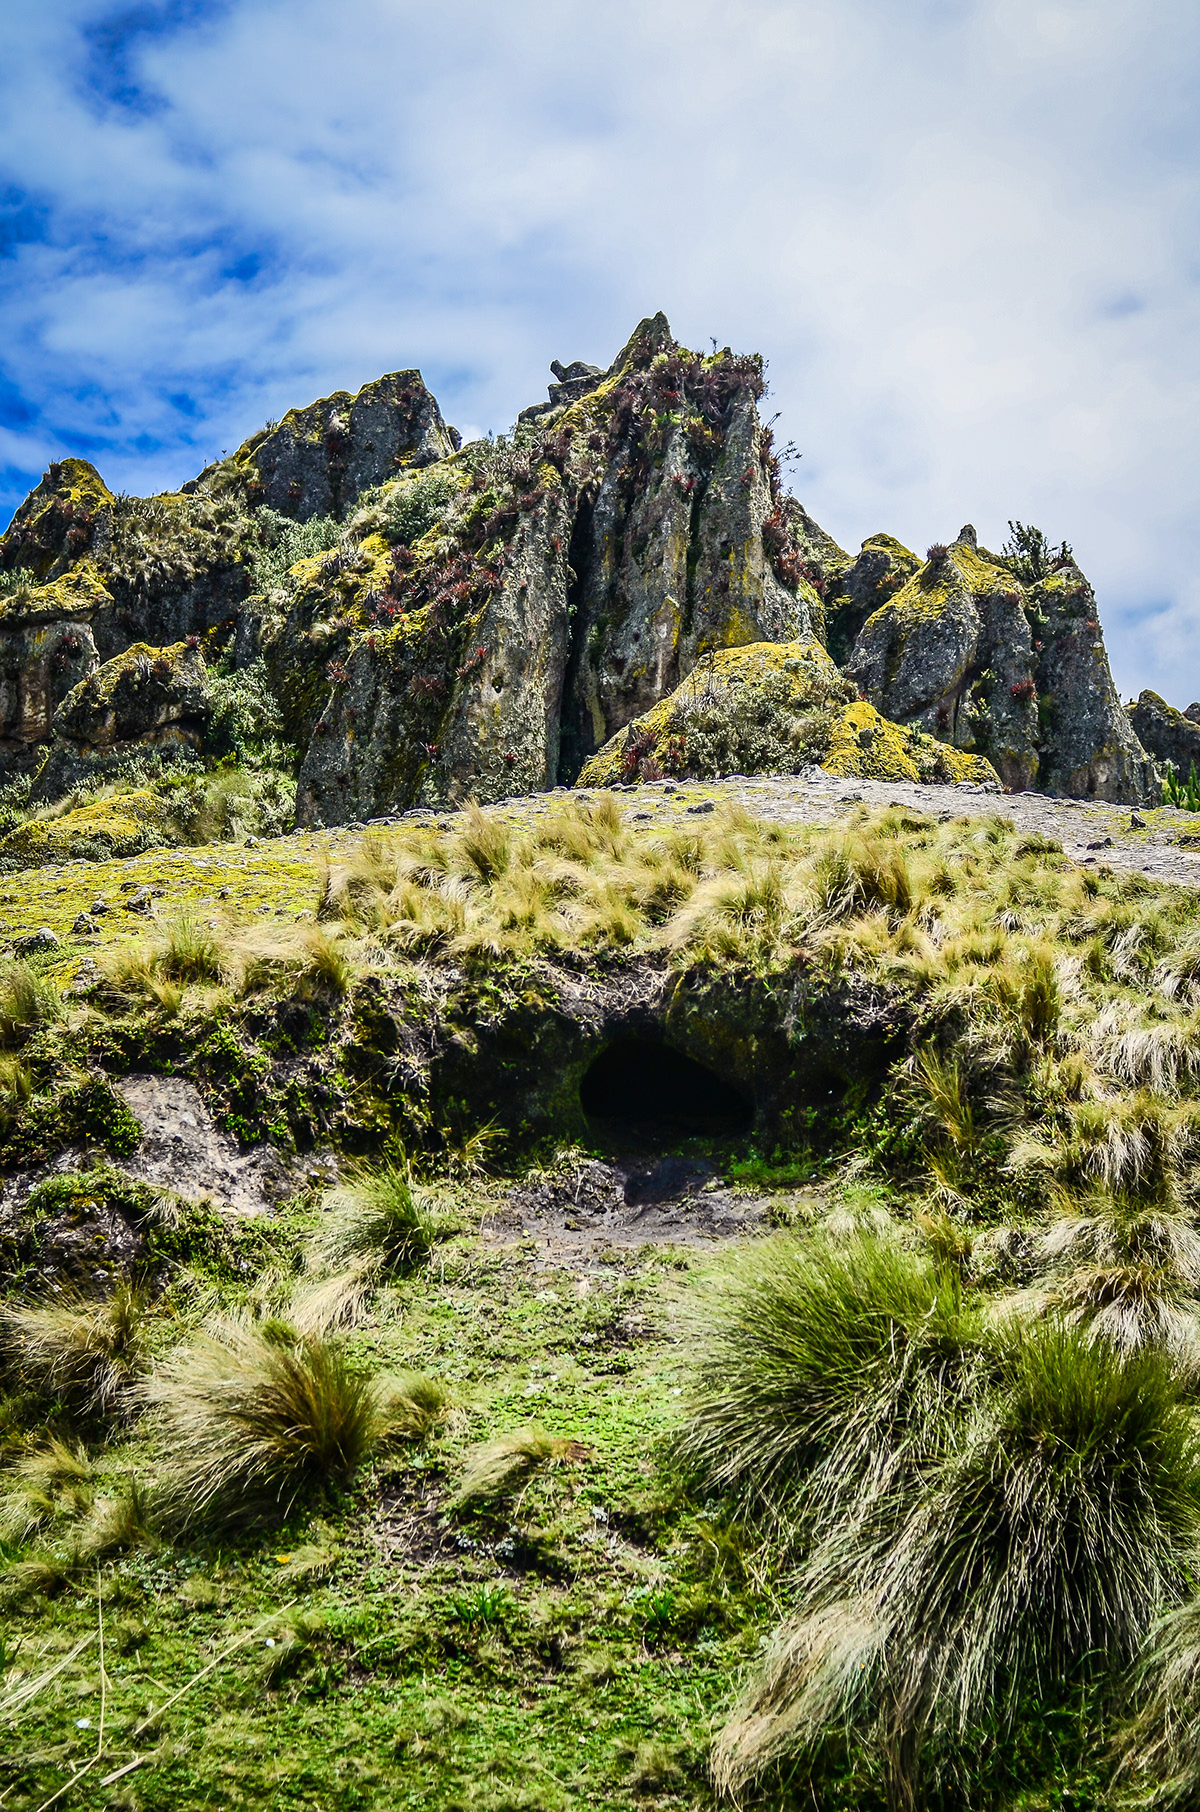 naturaleza Cajamarca peru